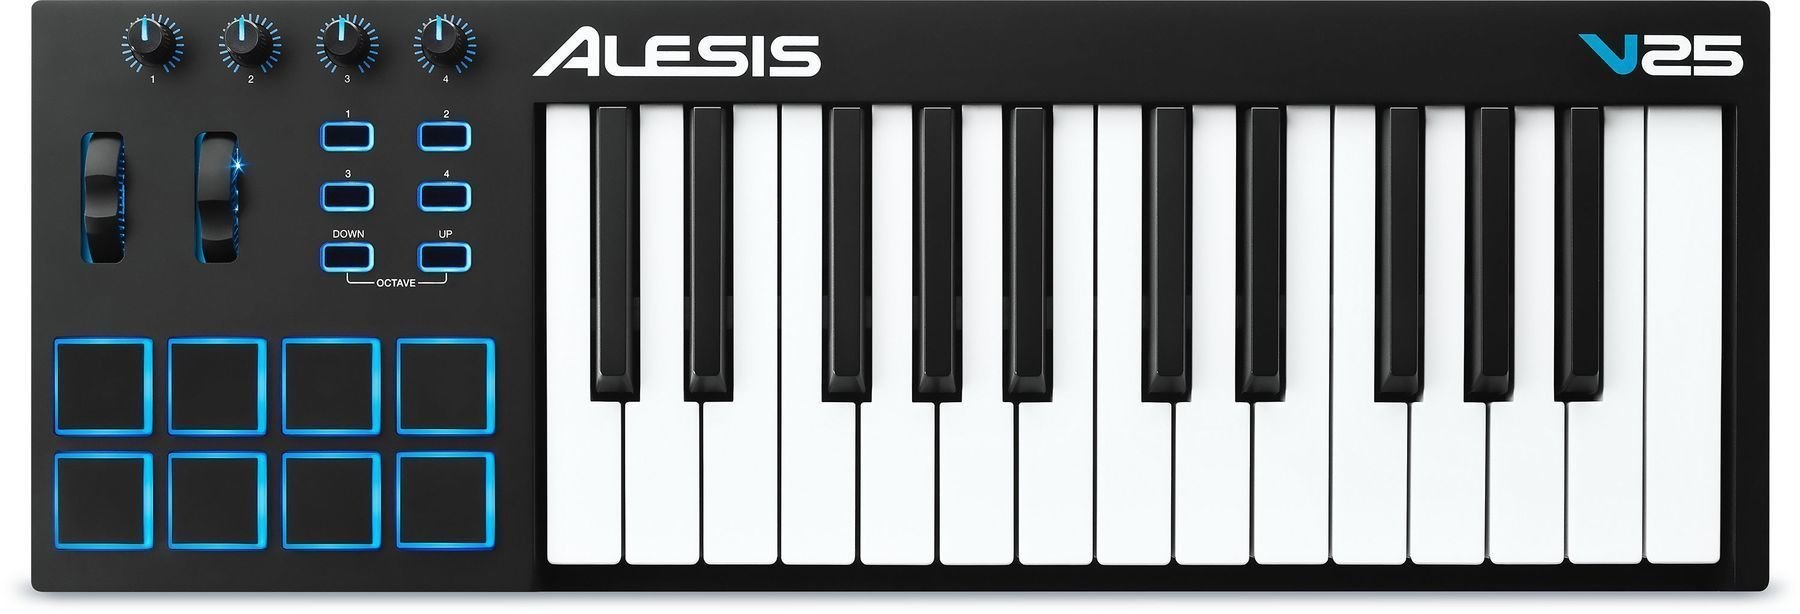 Clavier MIDI Alesis V25